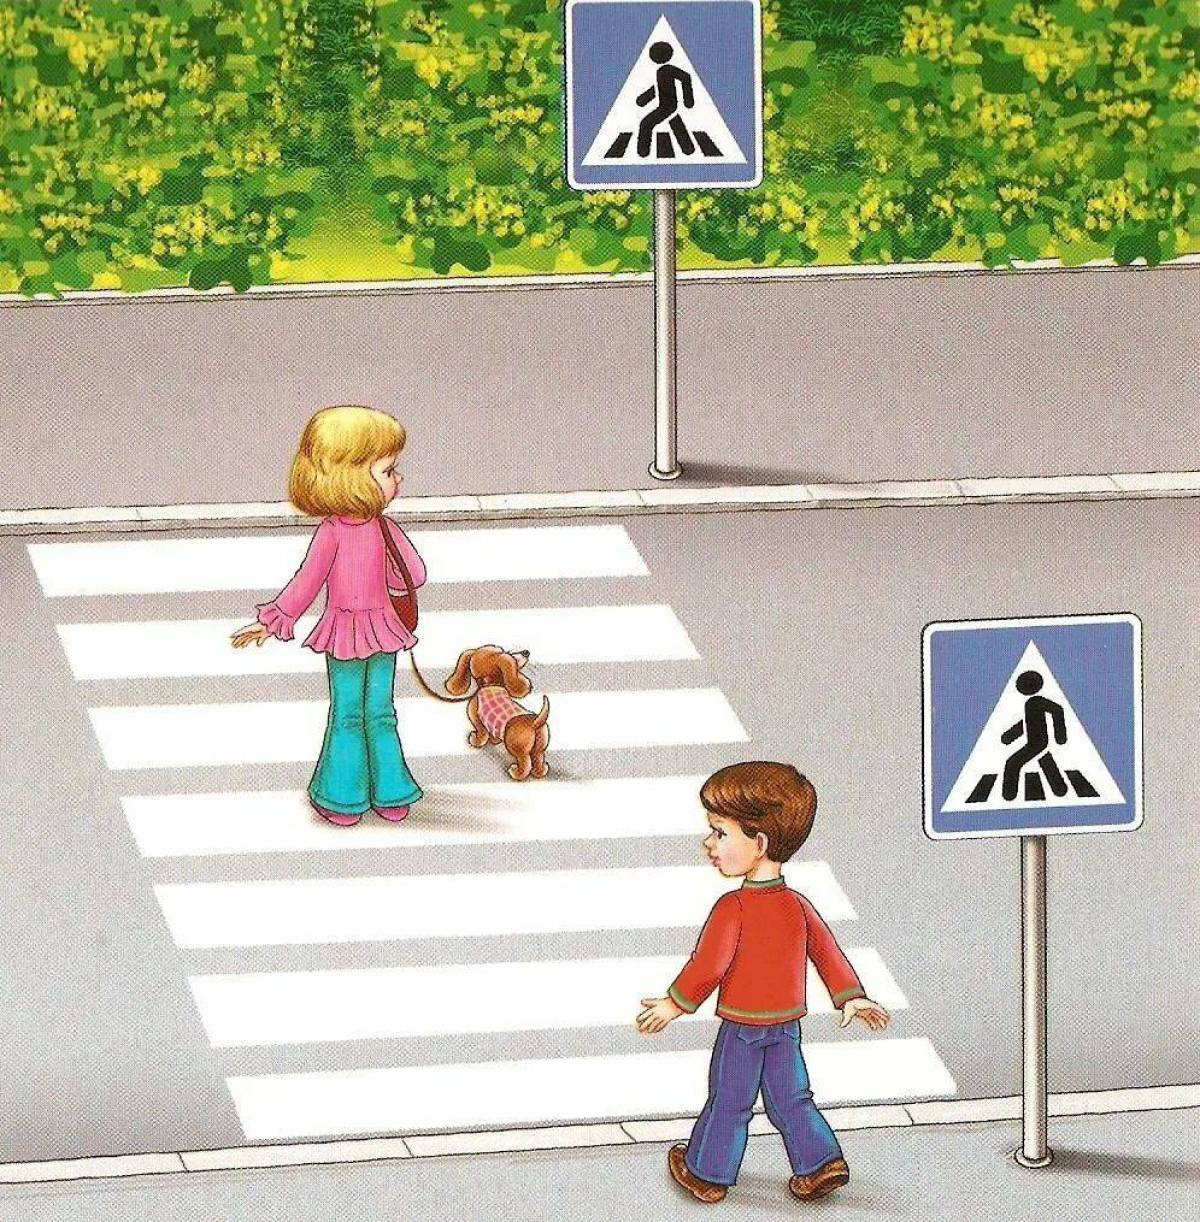 Беседа дети на дороге